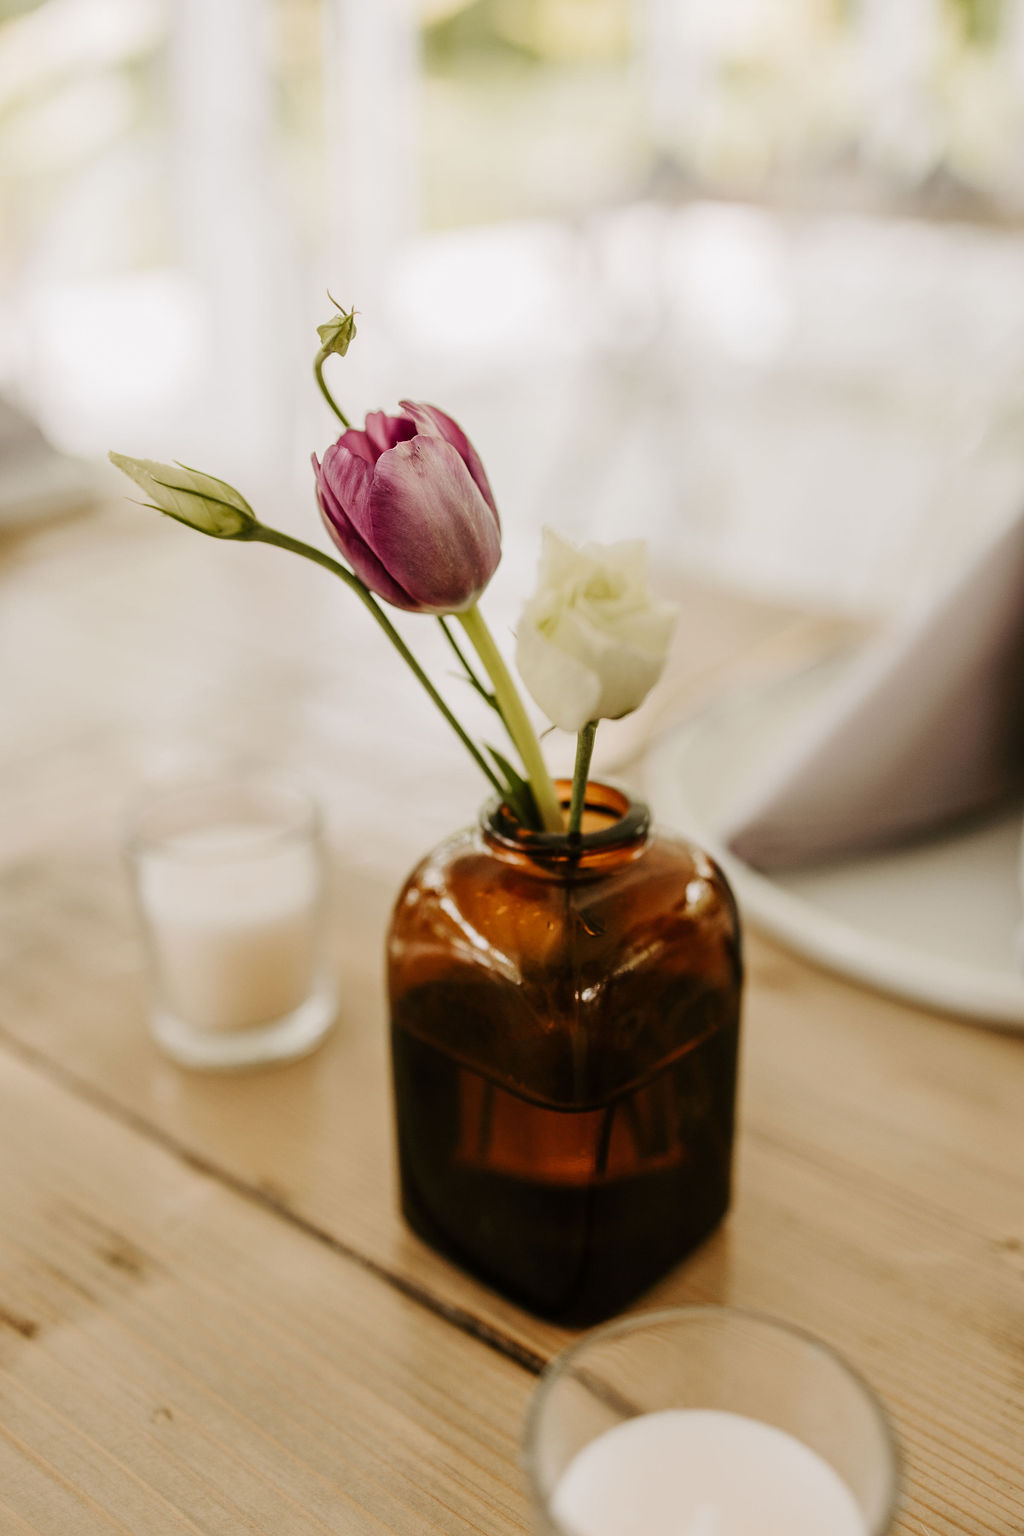 Amber bud vase with purple tulip